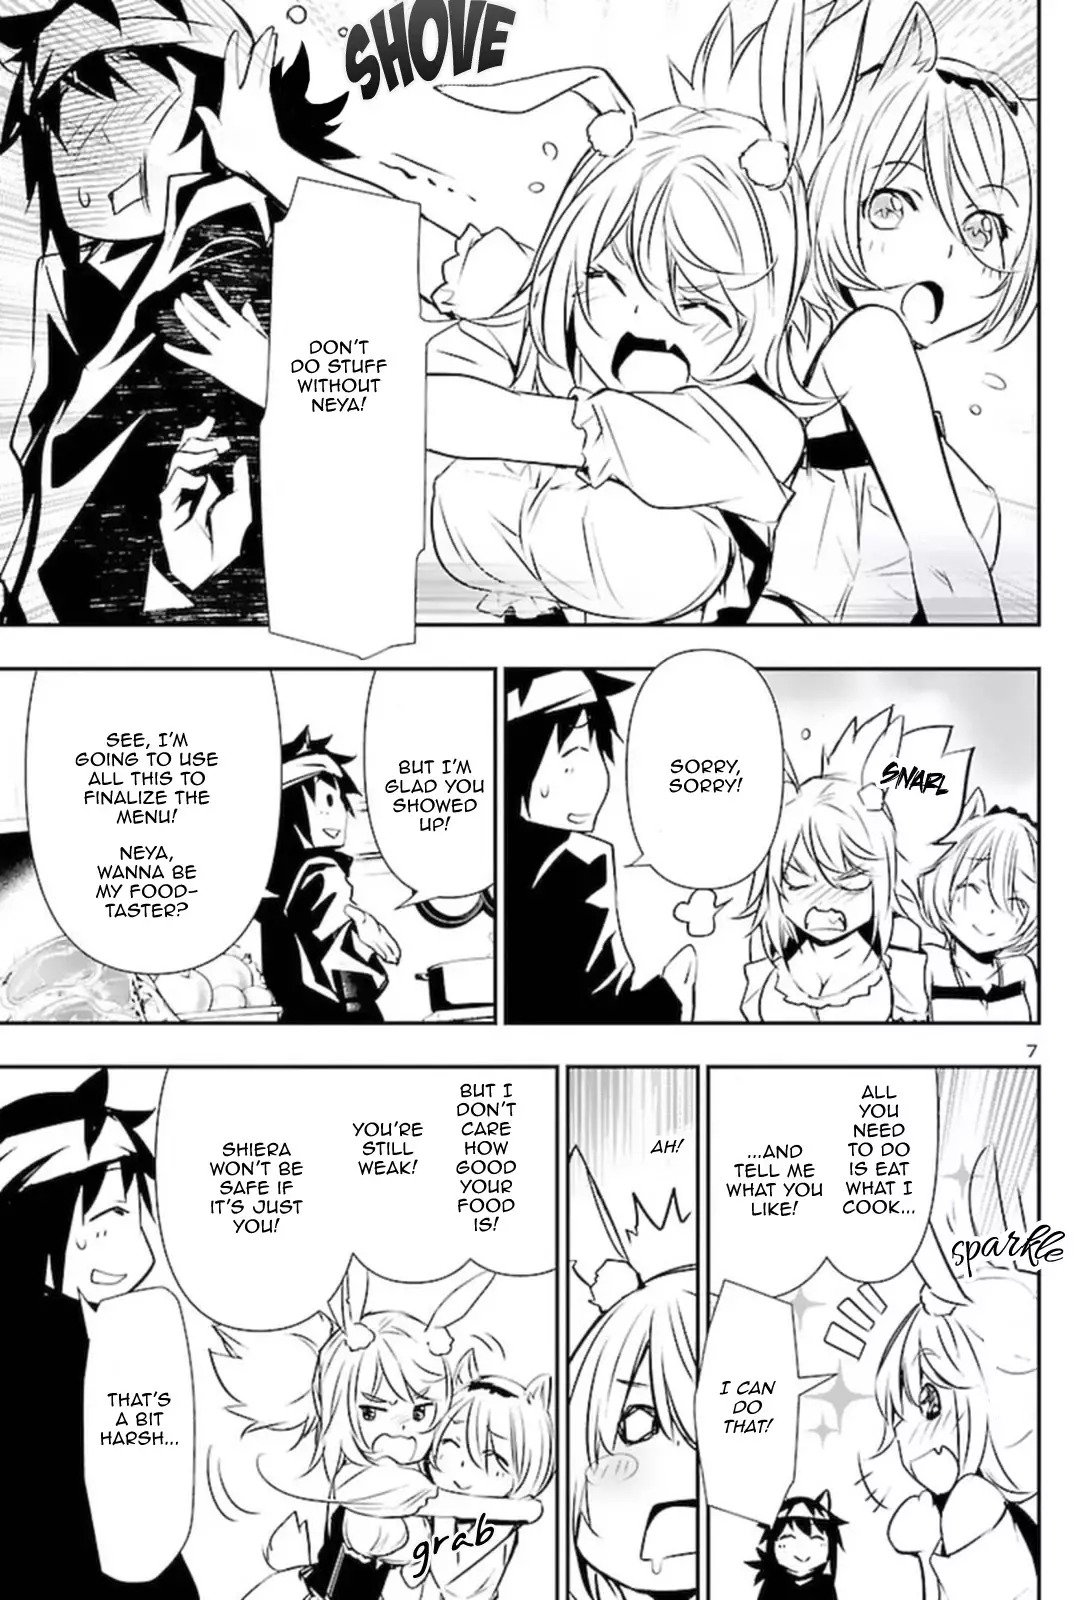 Shinju no Nectar - 57 page 7